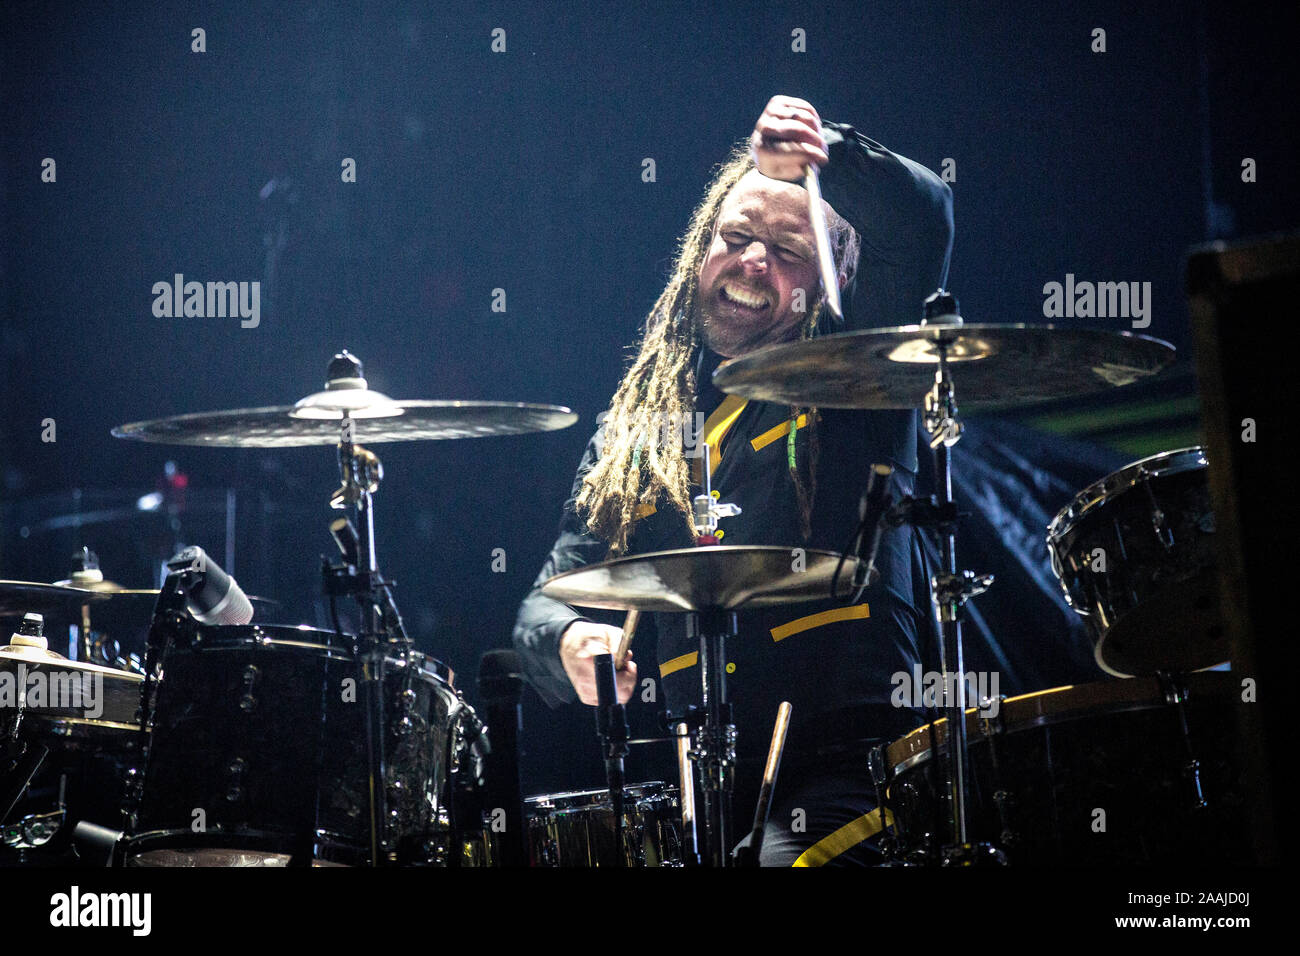 Oslo, Norvegia. 17th, novembre 2019. La American hard rock band Shinedown esegue un concerto dal vivo a Sentrum scena in Oslo. Qui il batterista Barry Kerch è visto dal vivo sul palco. (Photo credit: Gonzales foto - Terje Dokken). Foto Stock